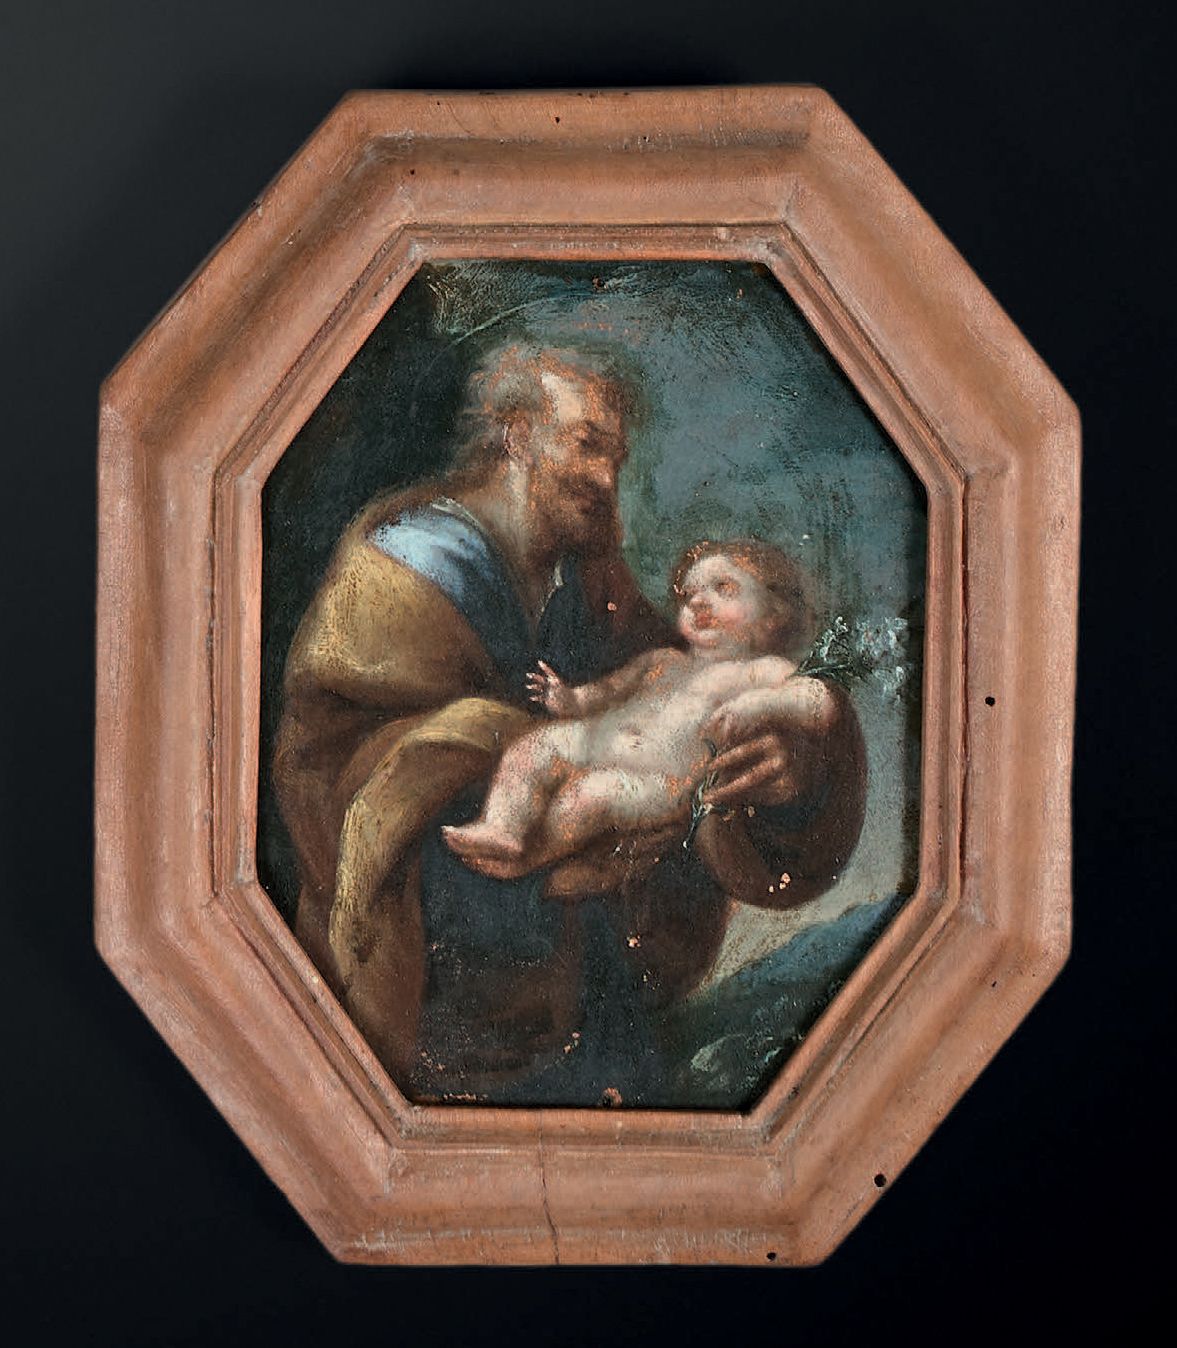 ECOLE ITALIENNE DU DÉBUT DU XVIIIe SIÈCLE 
Il bambino Gesù portato da un santo

&hellip;